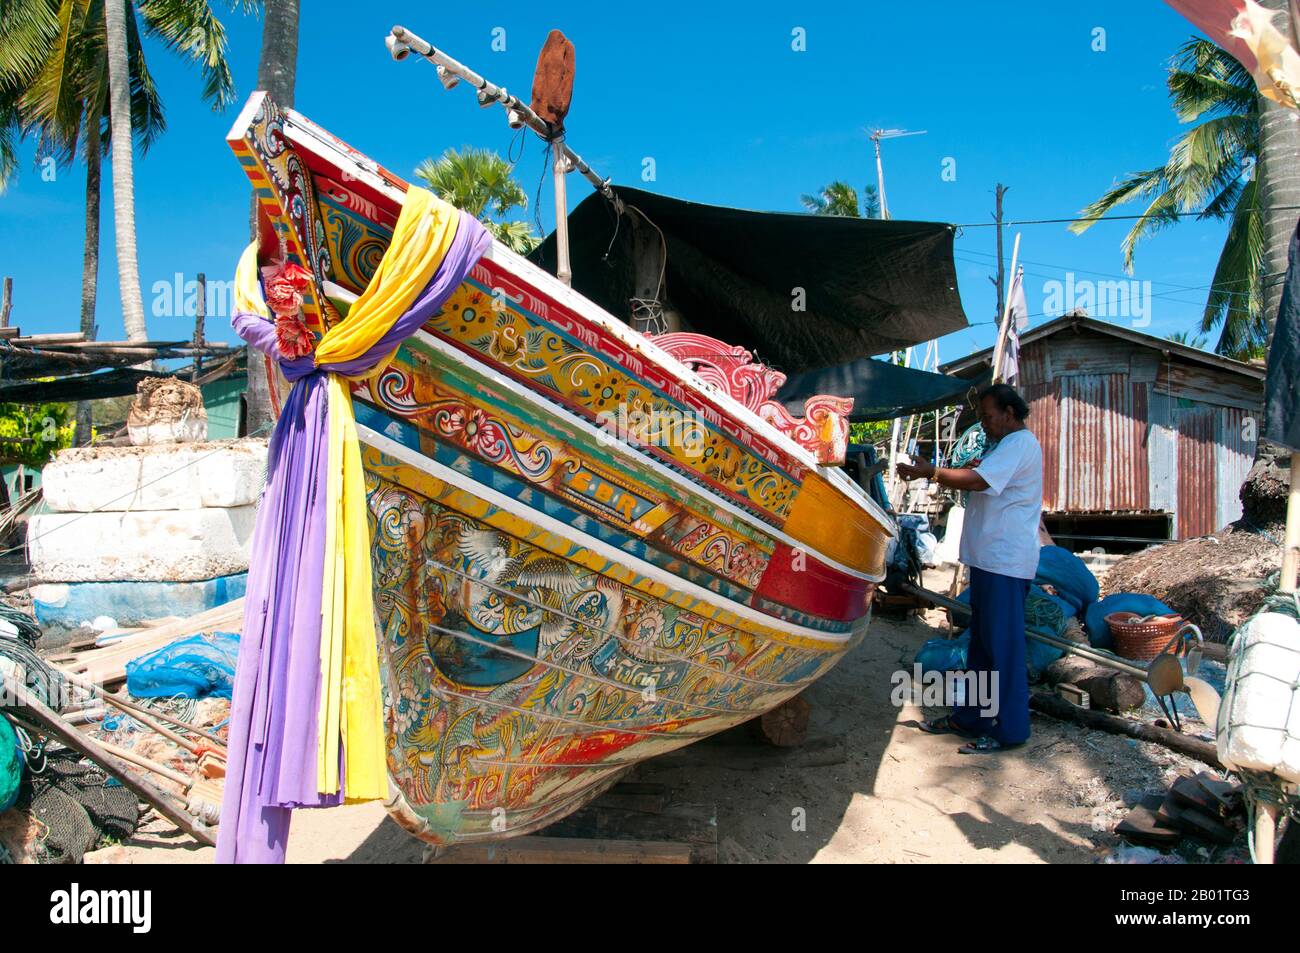 Thaïlande : bateaux de pêche Korlae, Saiburi, sud de la Thaïlande. Le long principalement de la côte est de la Thaïlande péninsulaire, de Ko Samui vers le sud, des bateaux de pêche colorés et peints ont été construits et décorés par des pêcheurs musulmans pendant des centaines d'années. Les meilleurs exemples de cette industrie en déclin proviennent des chantiers navals du district de Saiburi, province de Pattani. À l'origine, les voiliers, les korlae sont maintenant exploités avec des moteurs par des pêcheurs locaux. Parmi les personnages couramment représentés sur les dessins de coque superbement détaillés figurent le lion singha, l'oiseau à cornes gagasura, le serpent de mer payanak et le garuda b. Banque D'Images